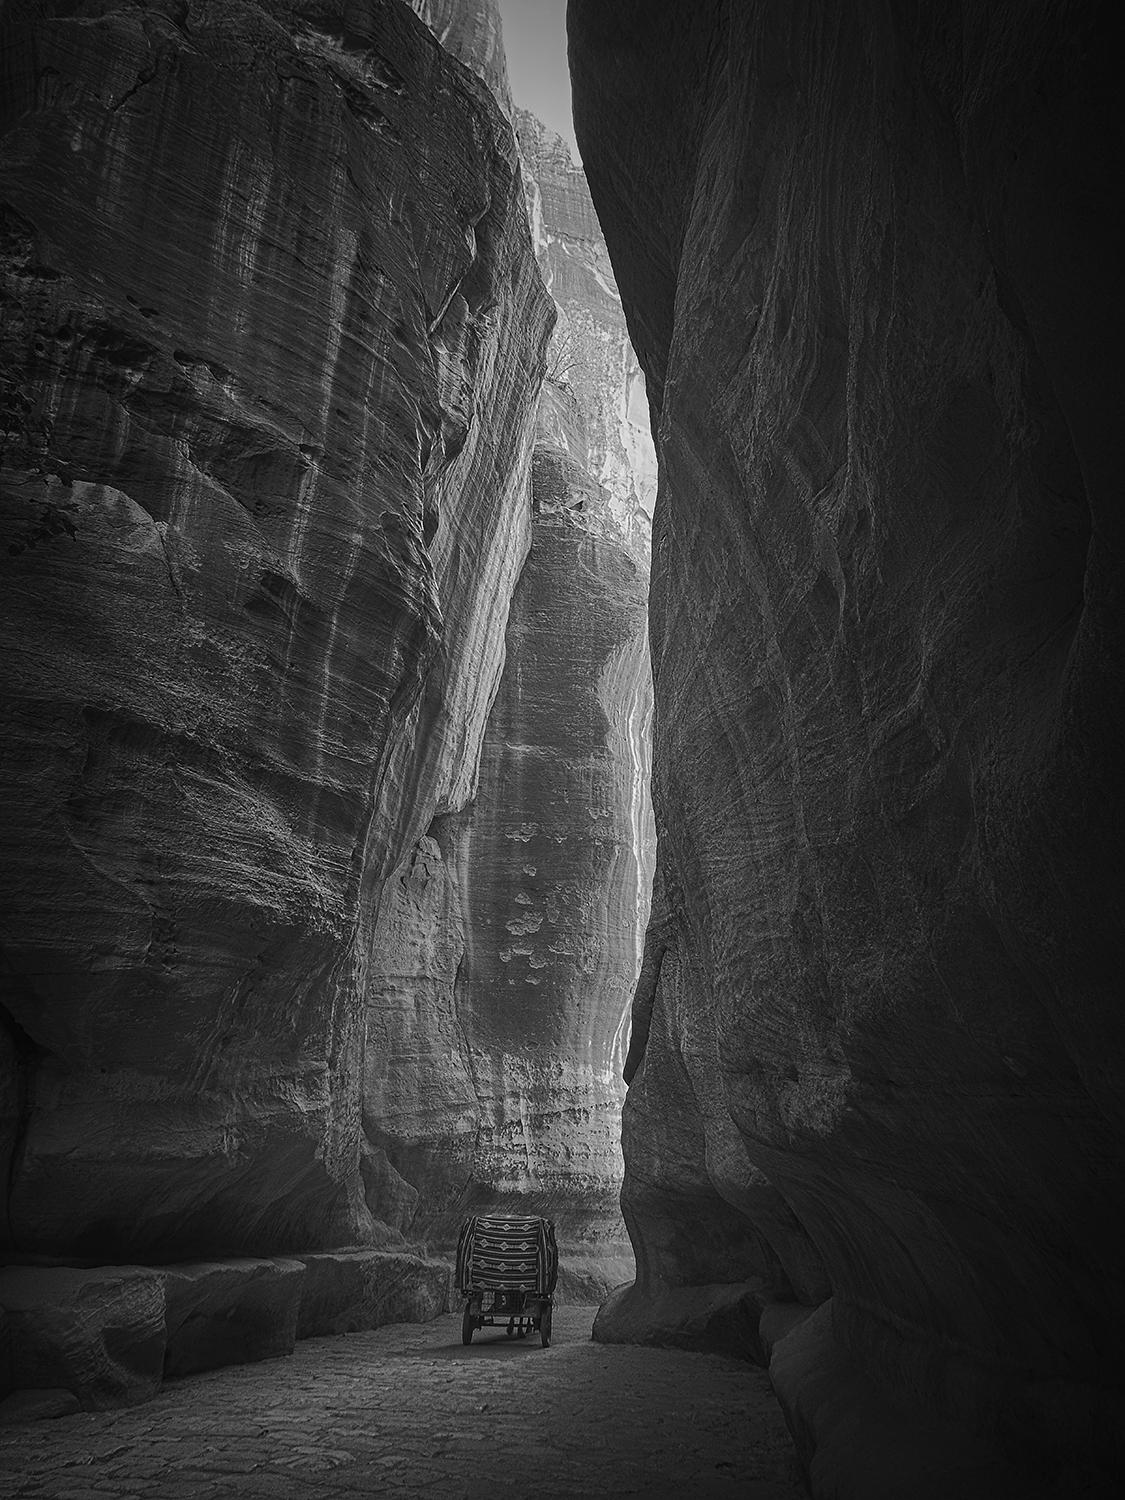 Hengki KOENTJORO. Petra Journey - Petra, Jordan. b&w photograph